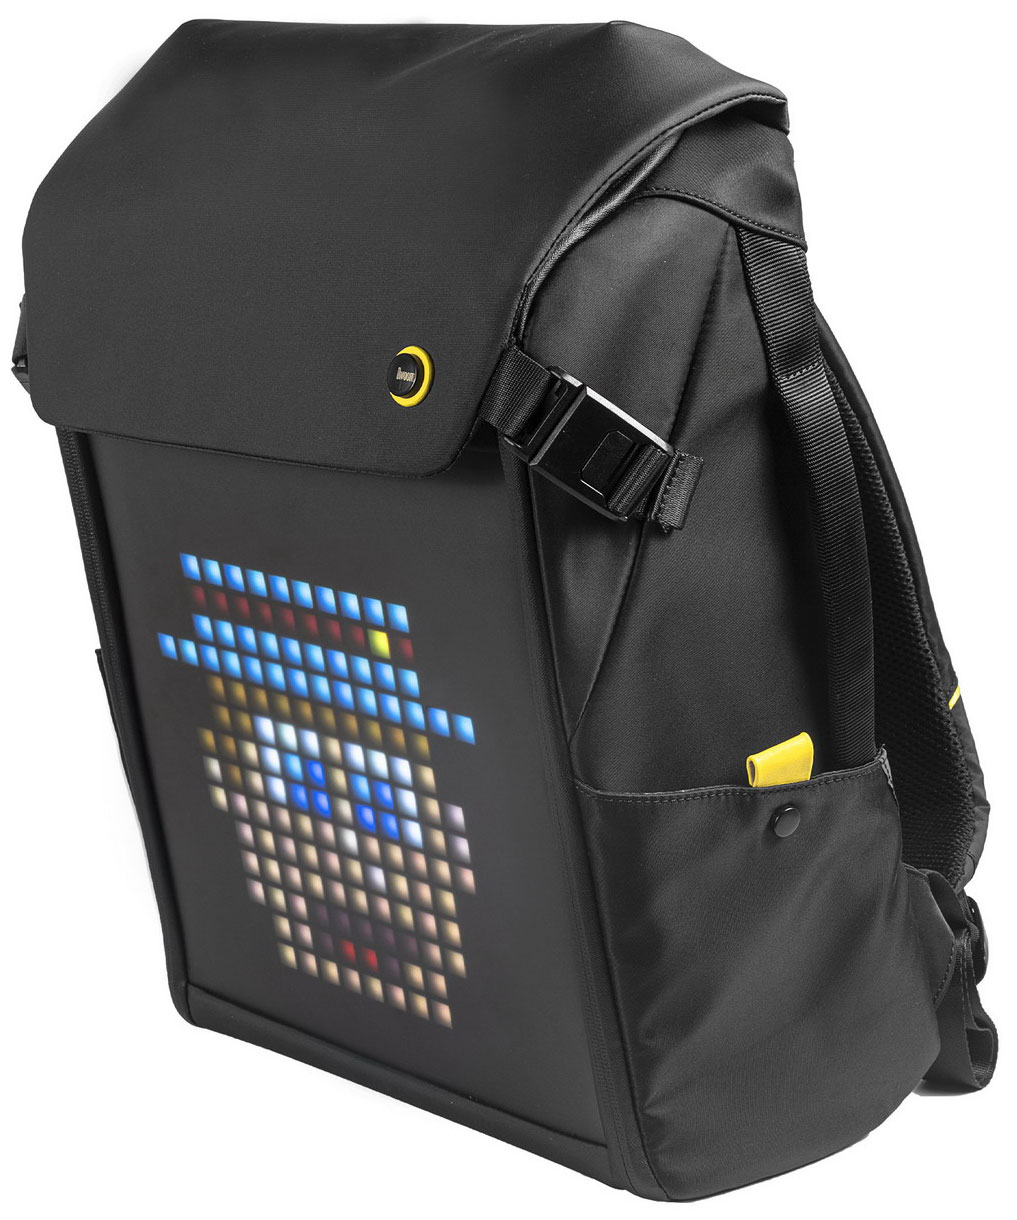 Рюкзак с пиксельным LED-экраном Divoom M divoom lovelock